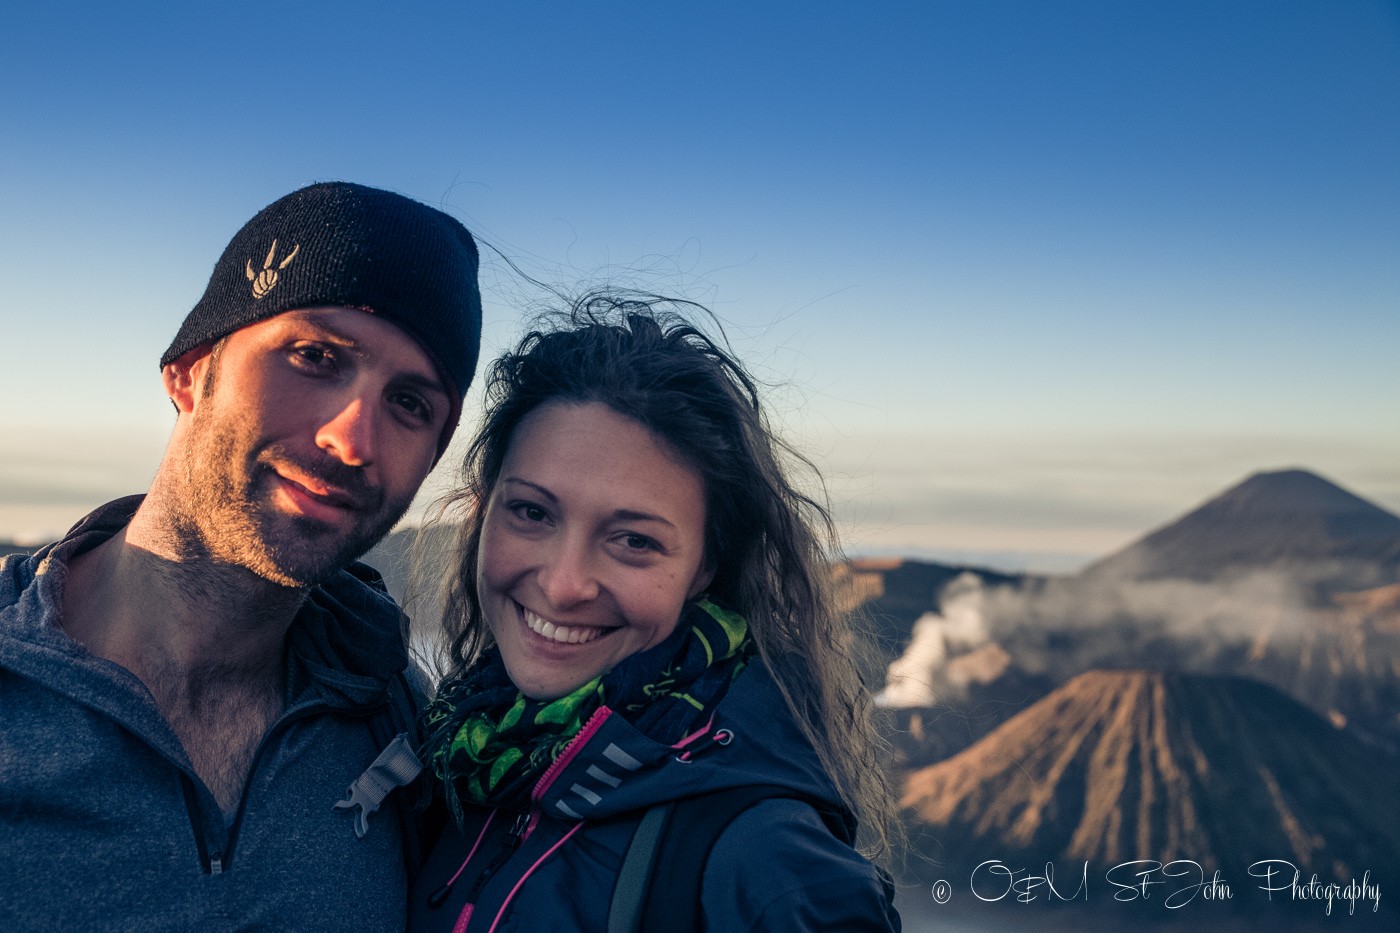 Max & Oksana at Mt Bromo at sunrise. East Java, Indonesia